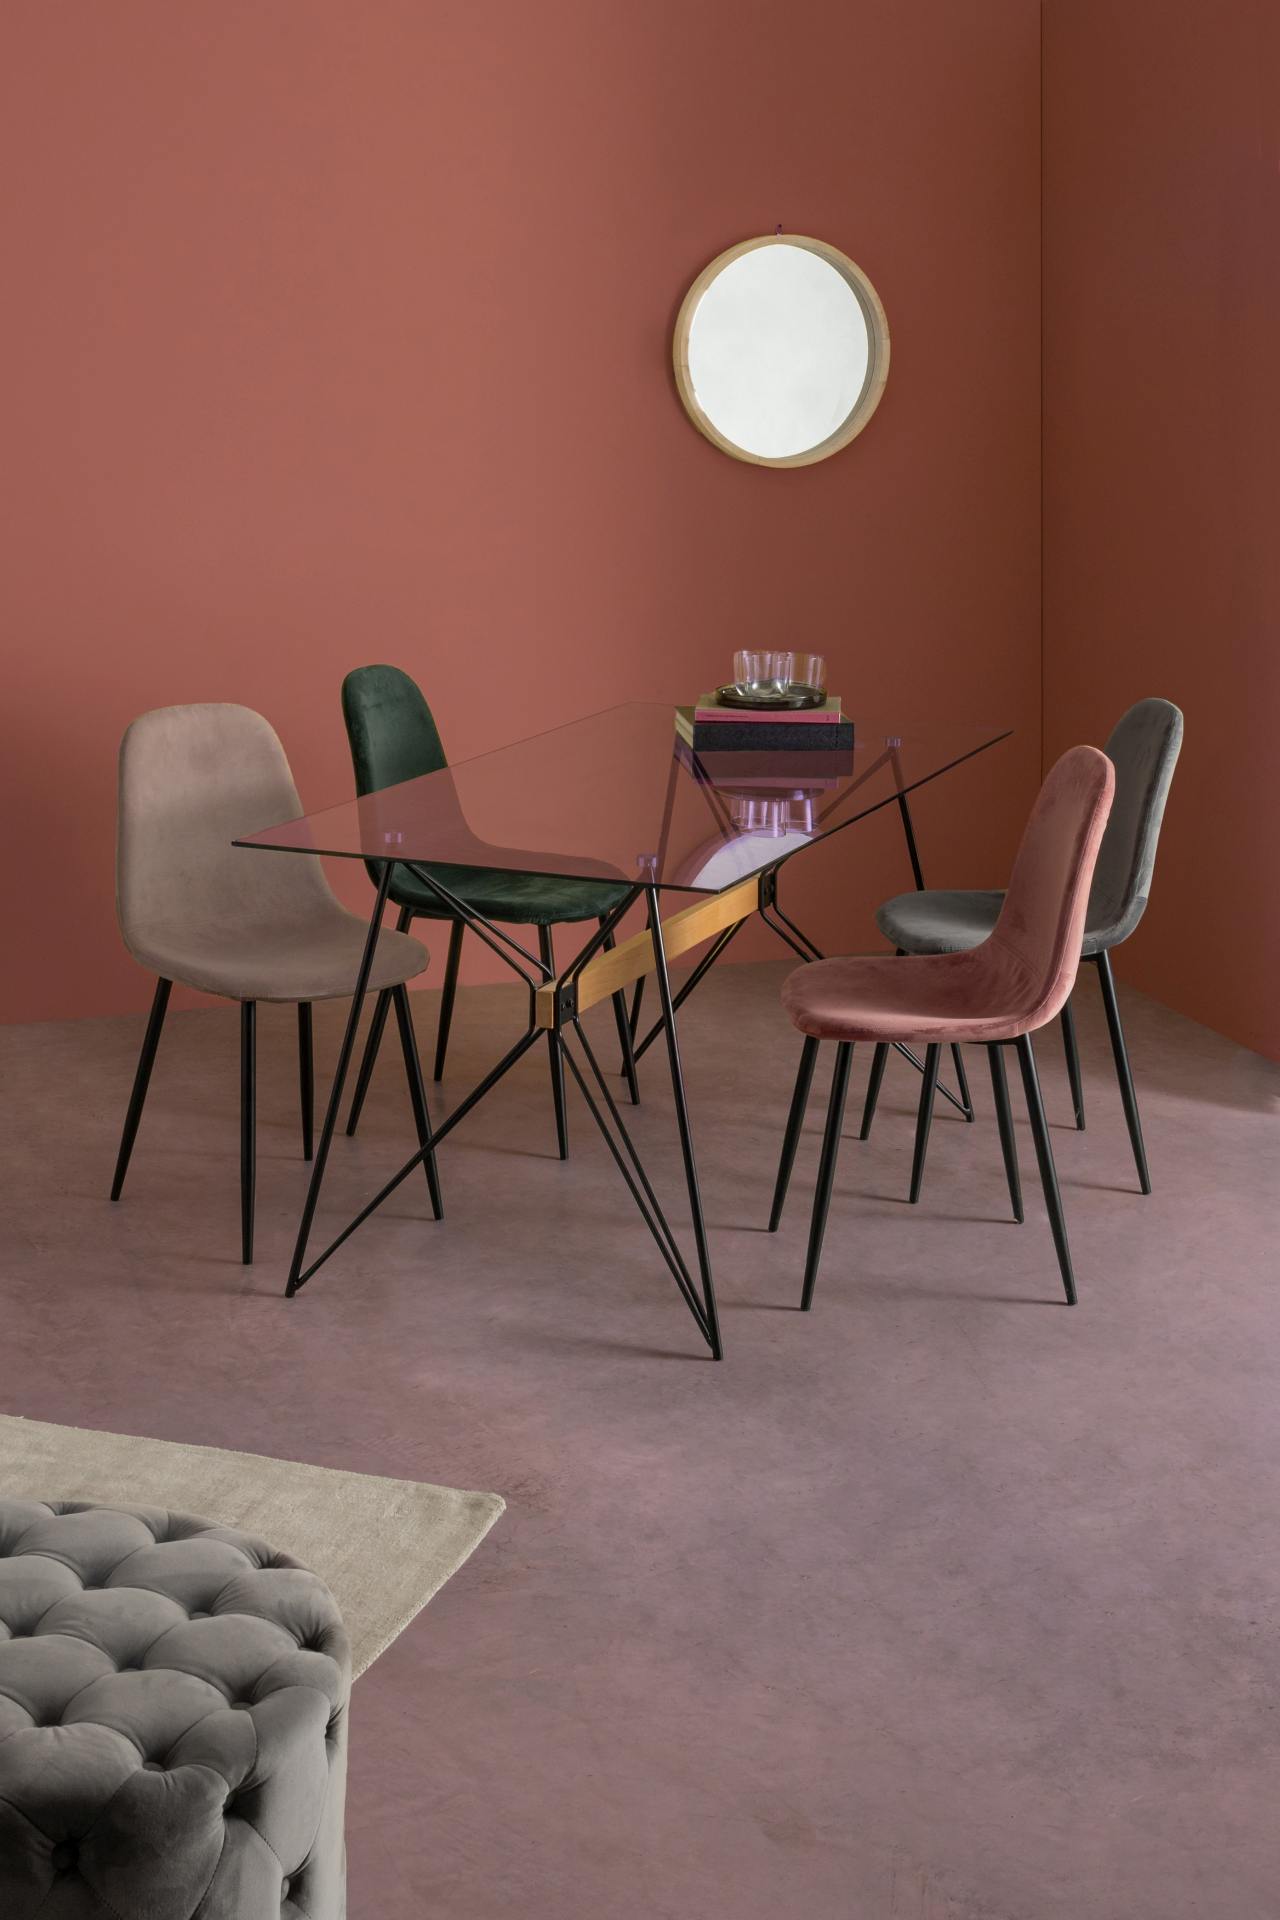 Der Esszimmerstuhl Irelia überzeugt mit seinem modernem Design. Gefertigt wurde der Stuhl aus einem Samt-Bezug, welcher einen dunkelgrauen Farbton besitzt. Das Gestell ist aus Metall und ist schwarz. Die Sitzhöhe beträgt 47 cm.